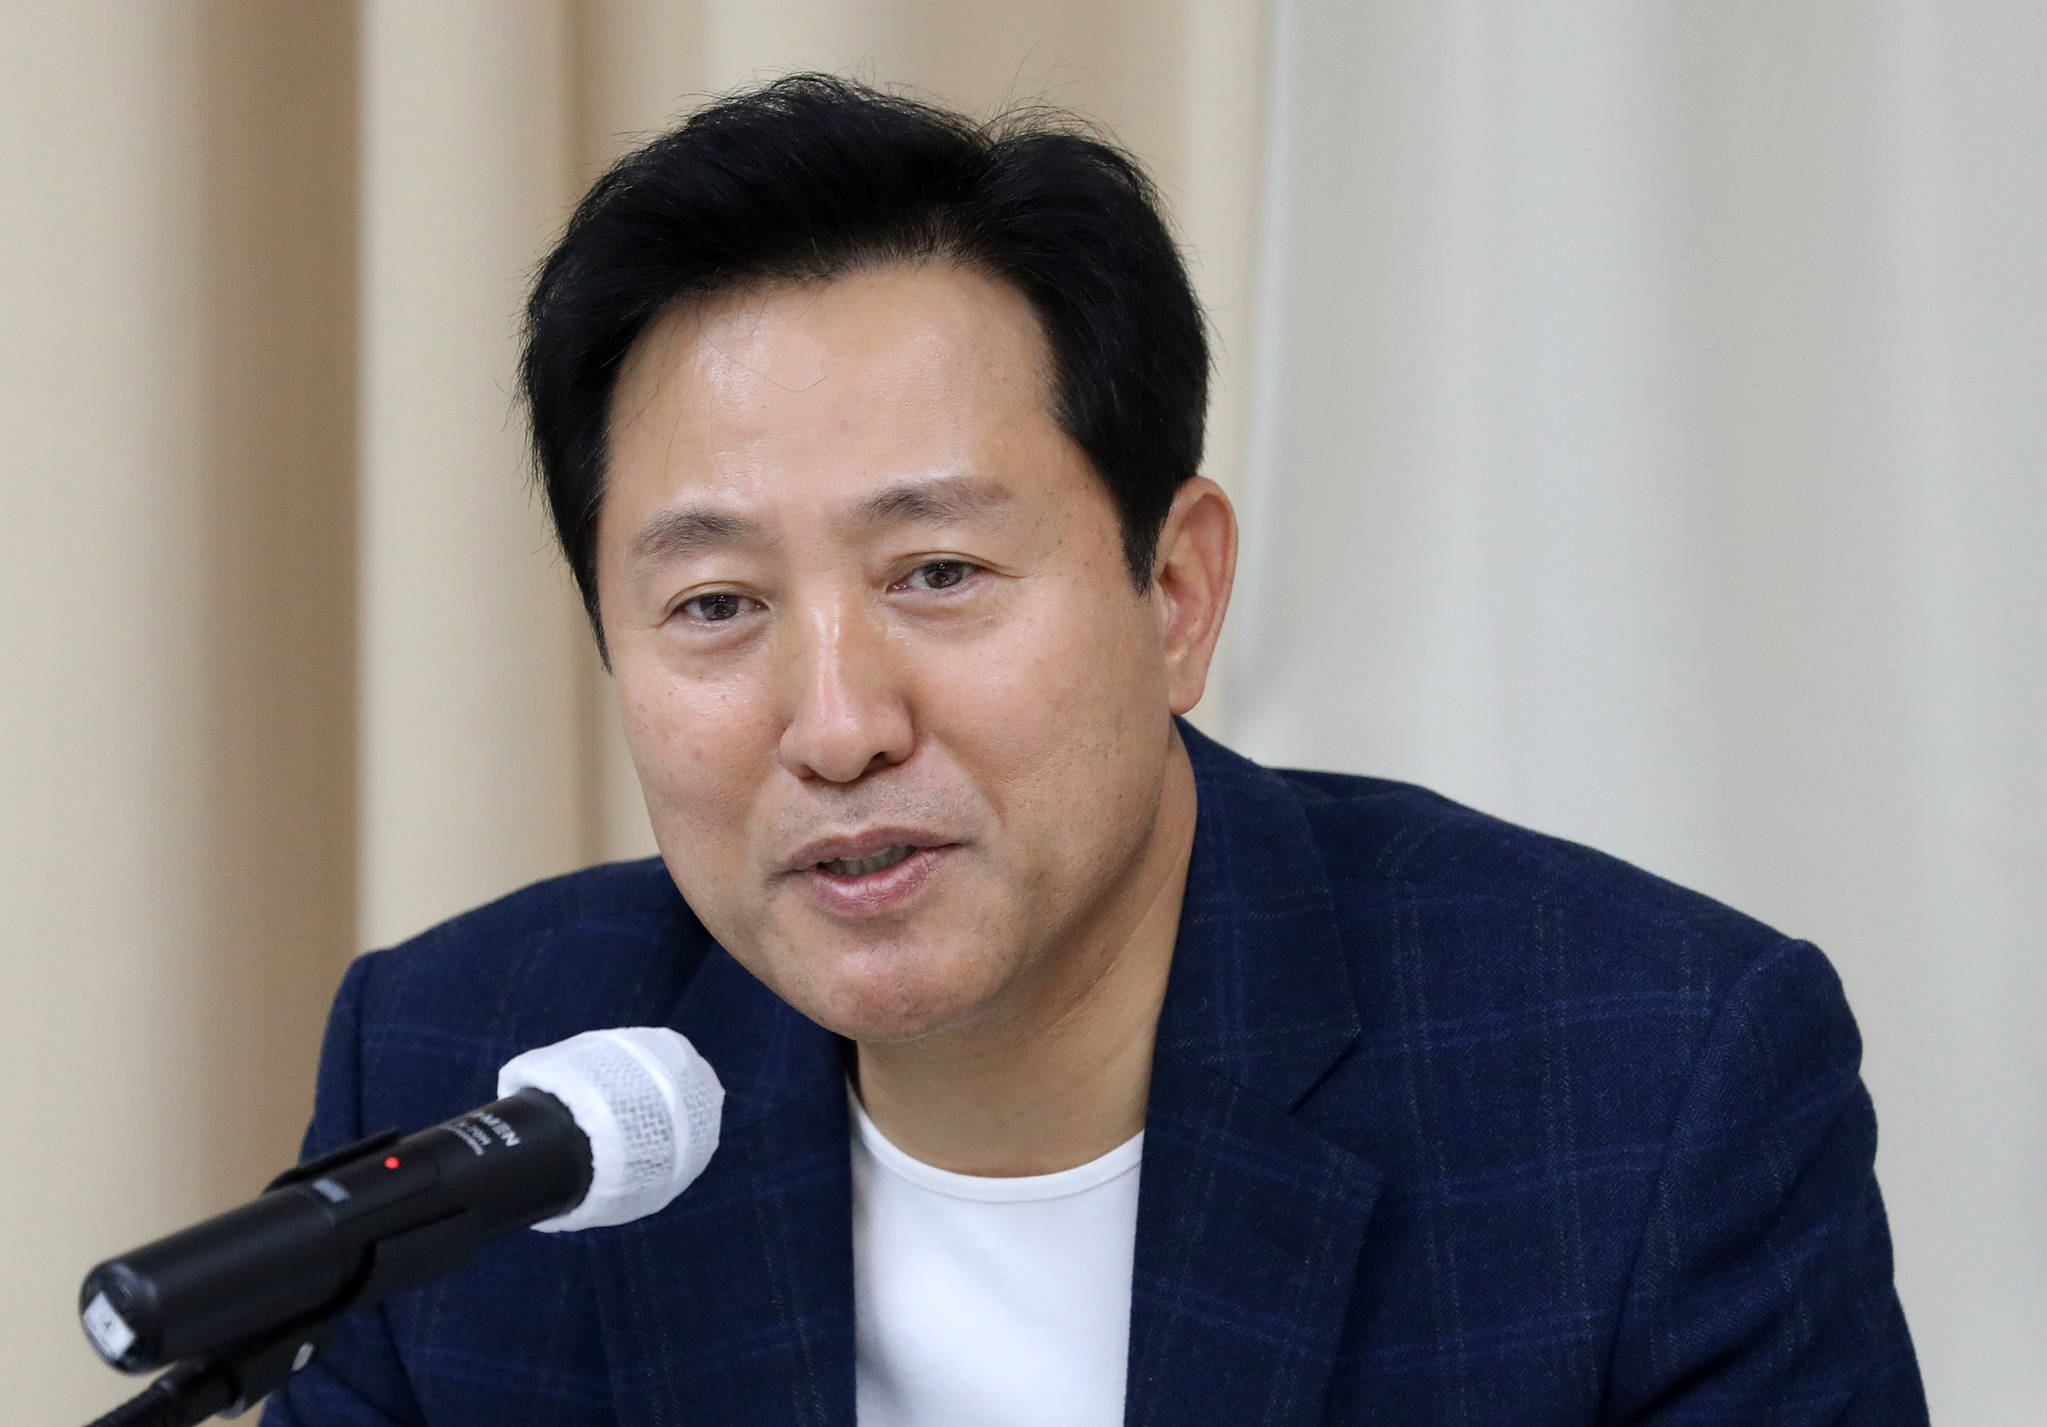 오세훈 시장 프로필 나이 서울시장 인스타 공약 과거 리즈 의원 정당